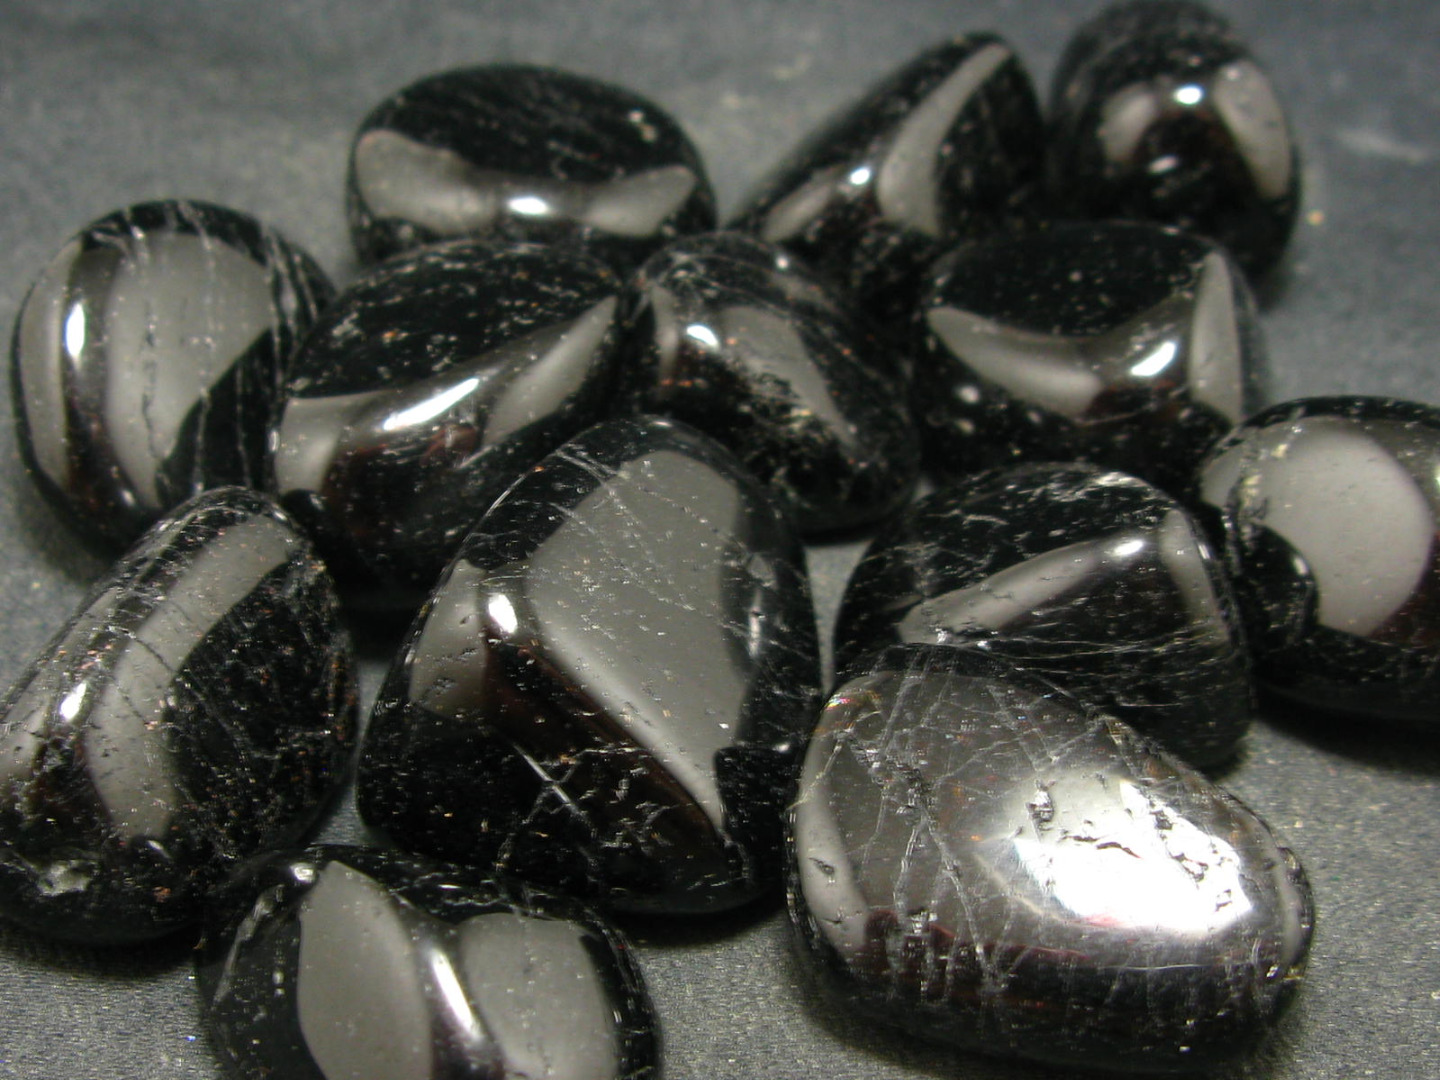 đá sapphire đen cho người sinh năm 1974